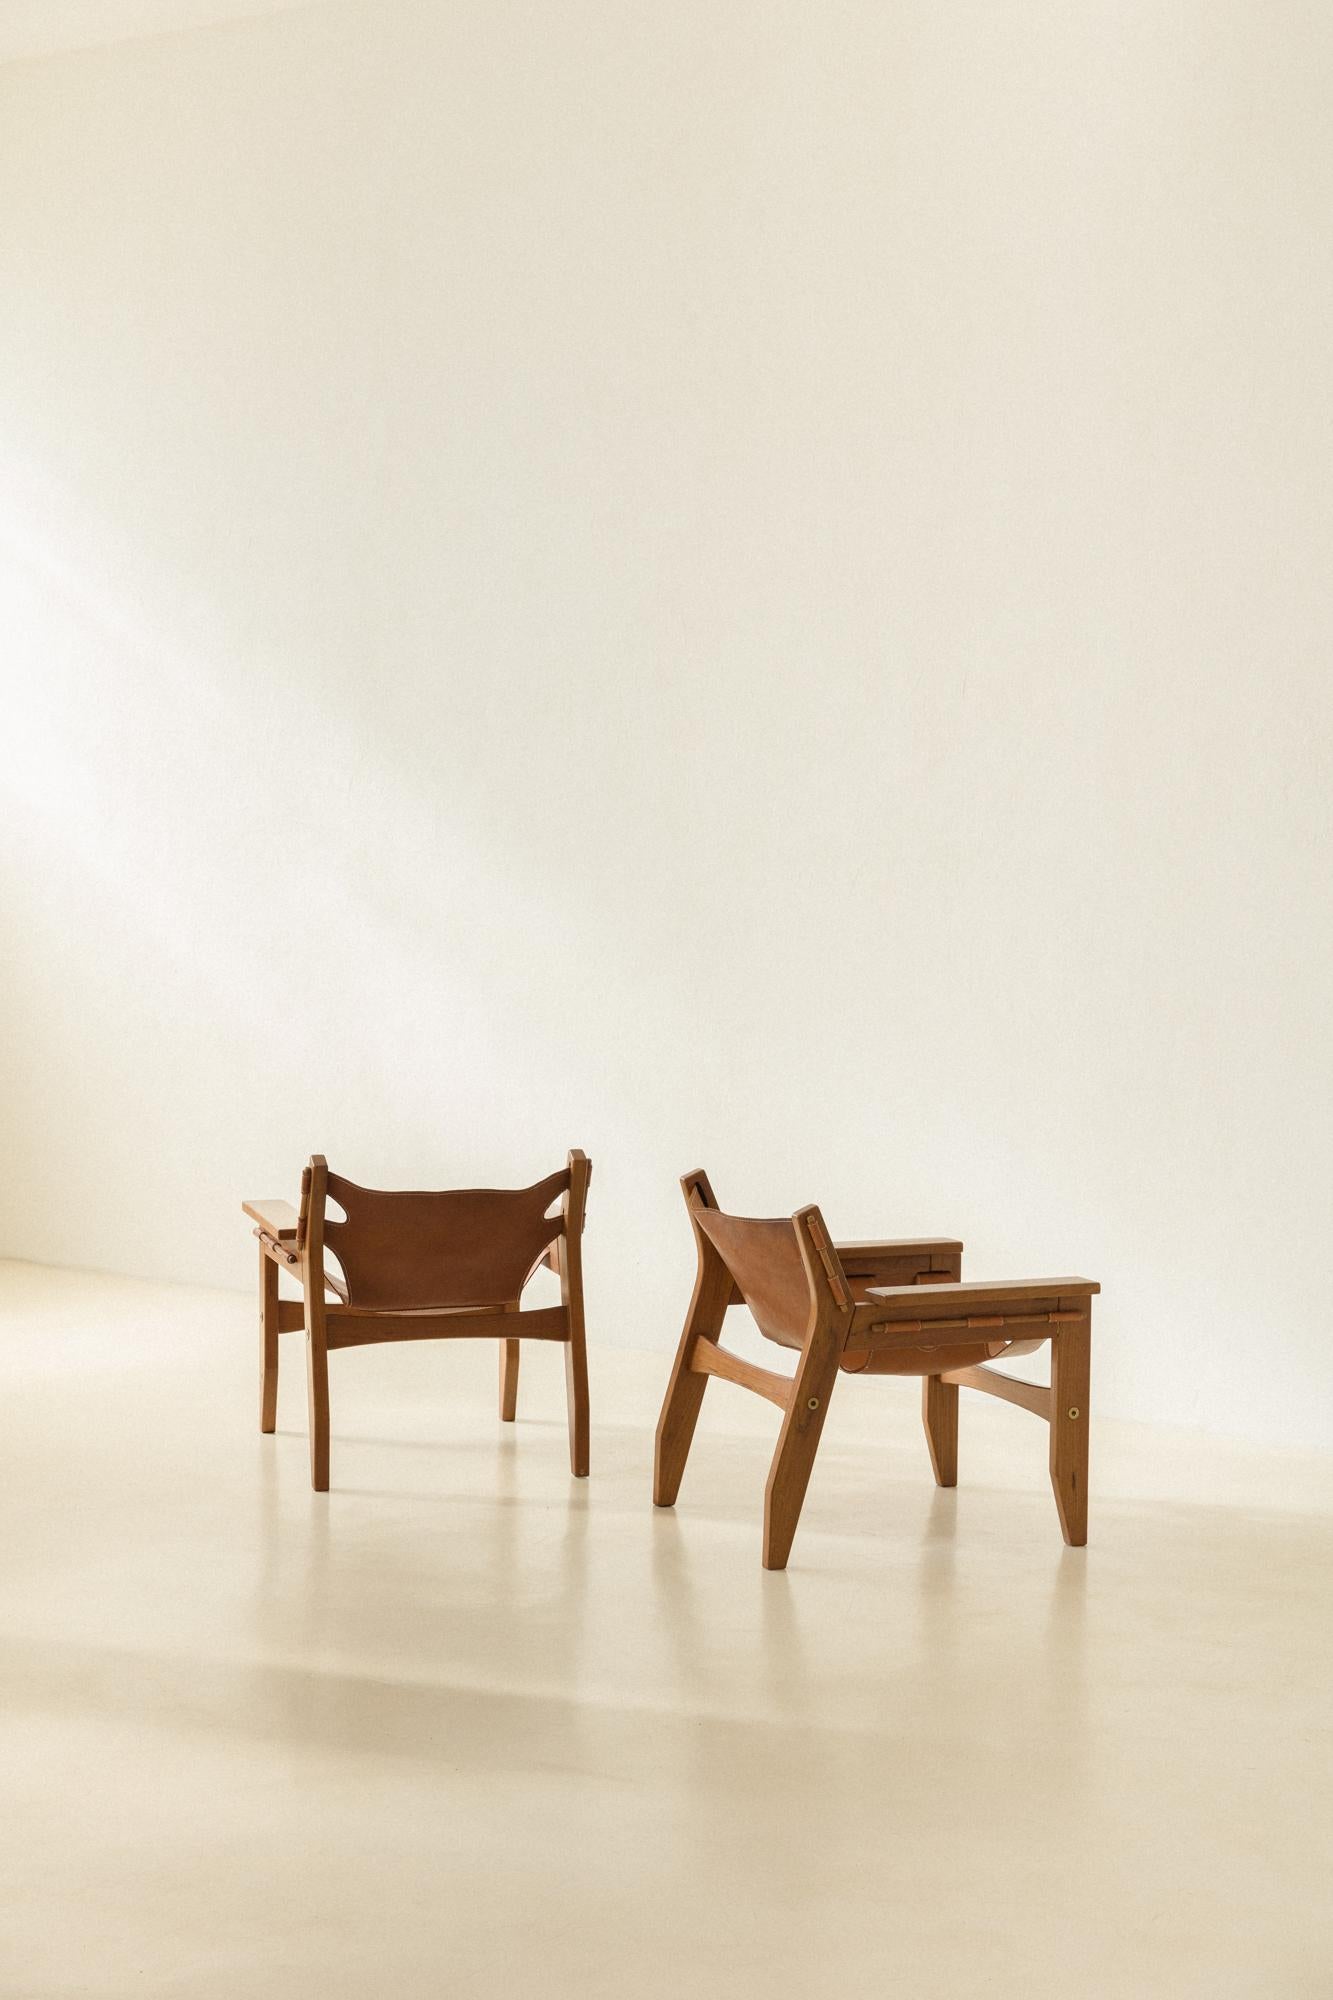 Conçu par Sergio Rodrigues (1927-2014) en 1973 et produit par Oca, le fauteuil Kilin est composé de deux côtés et de deux traverses, le dossier et l'assise étant réalisés dans une pièce unique de cuir.

Le design audacieux, avec des formes et des